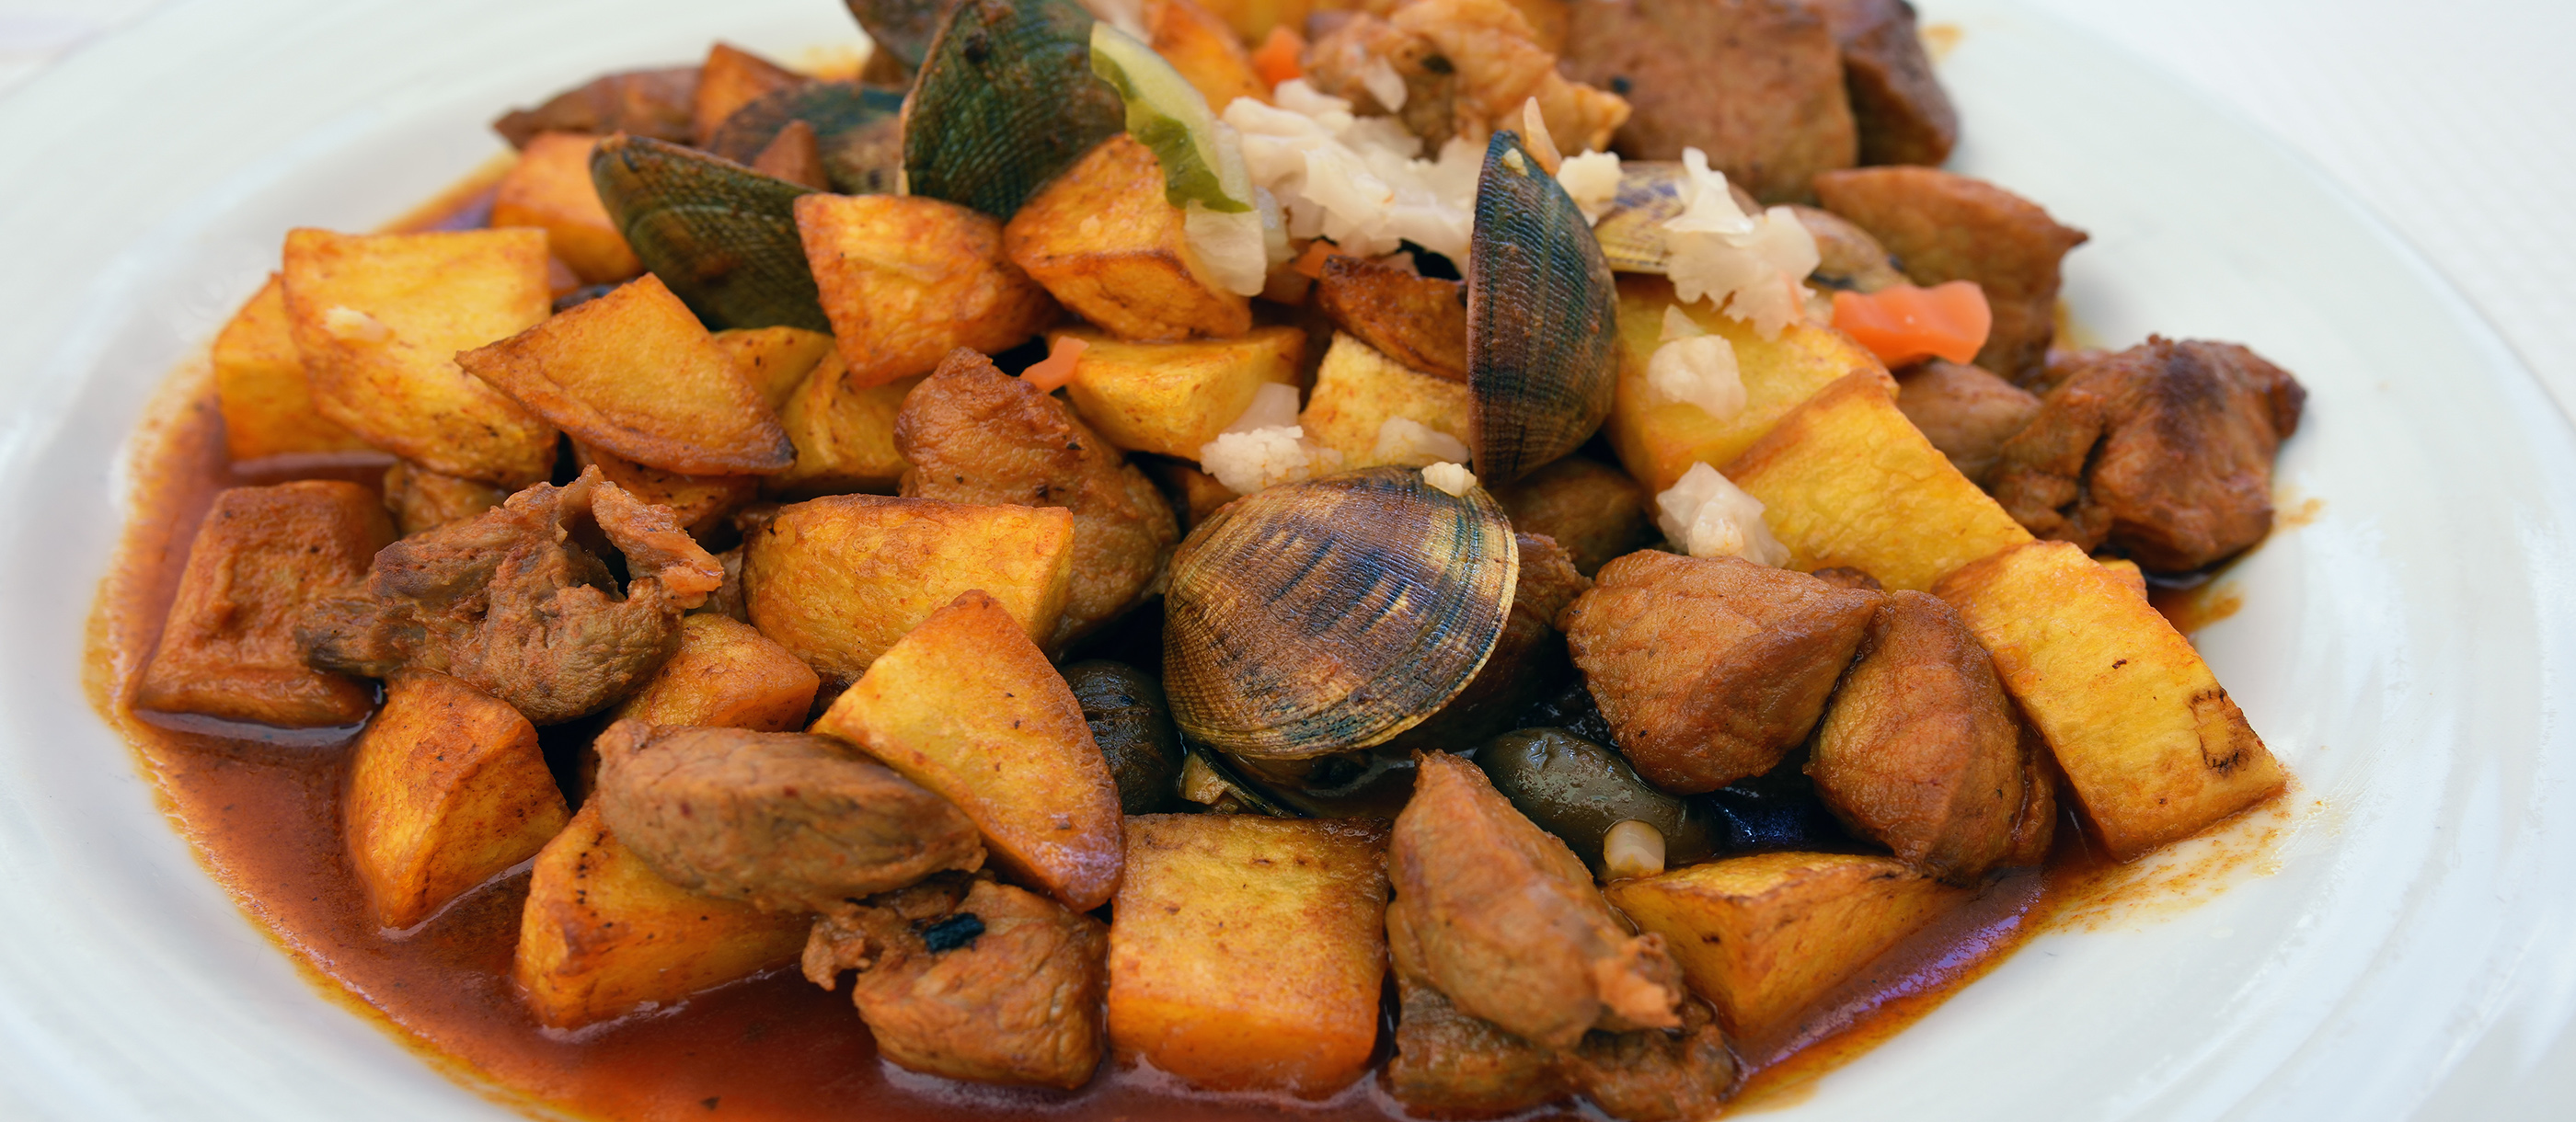 Carne De Porco à Alentejana Traditional Pork Dish From Algarve Portugal